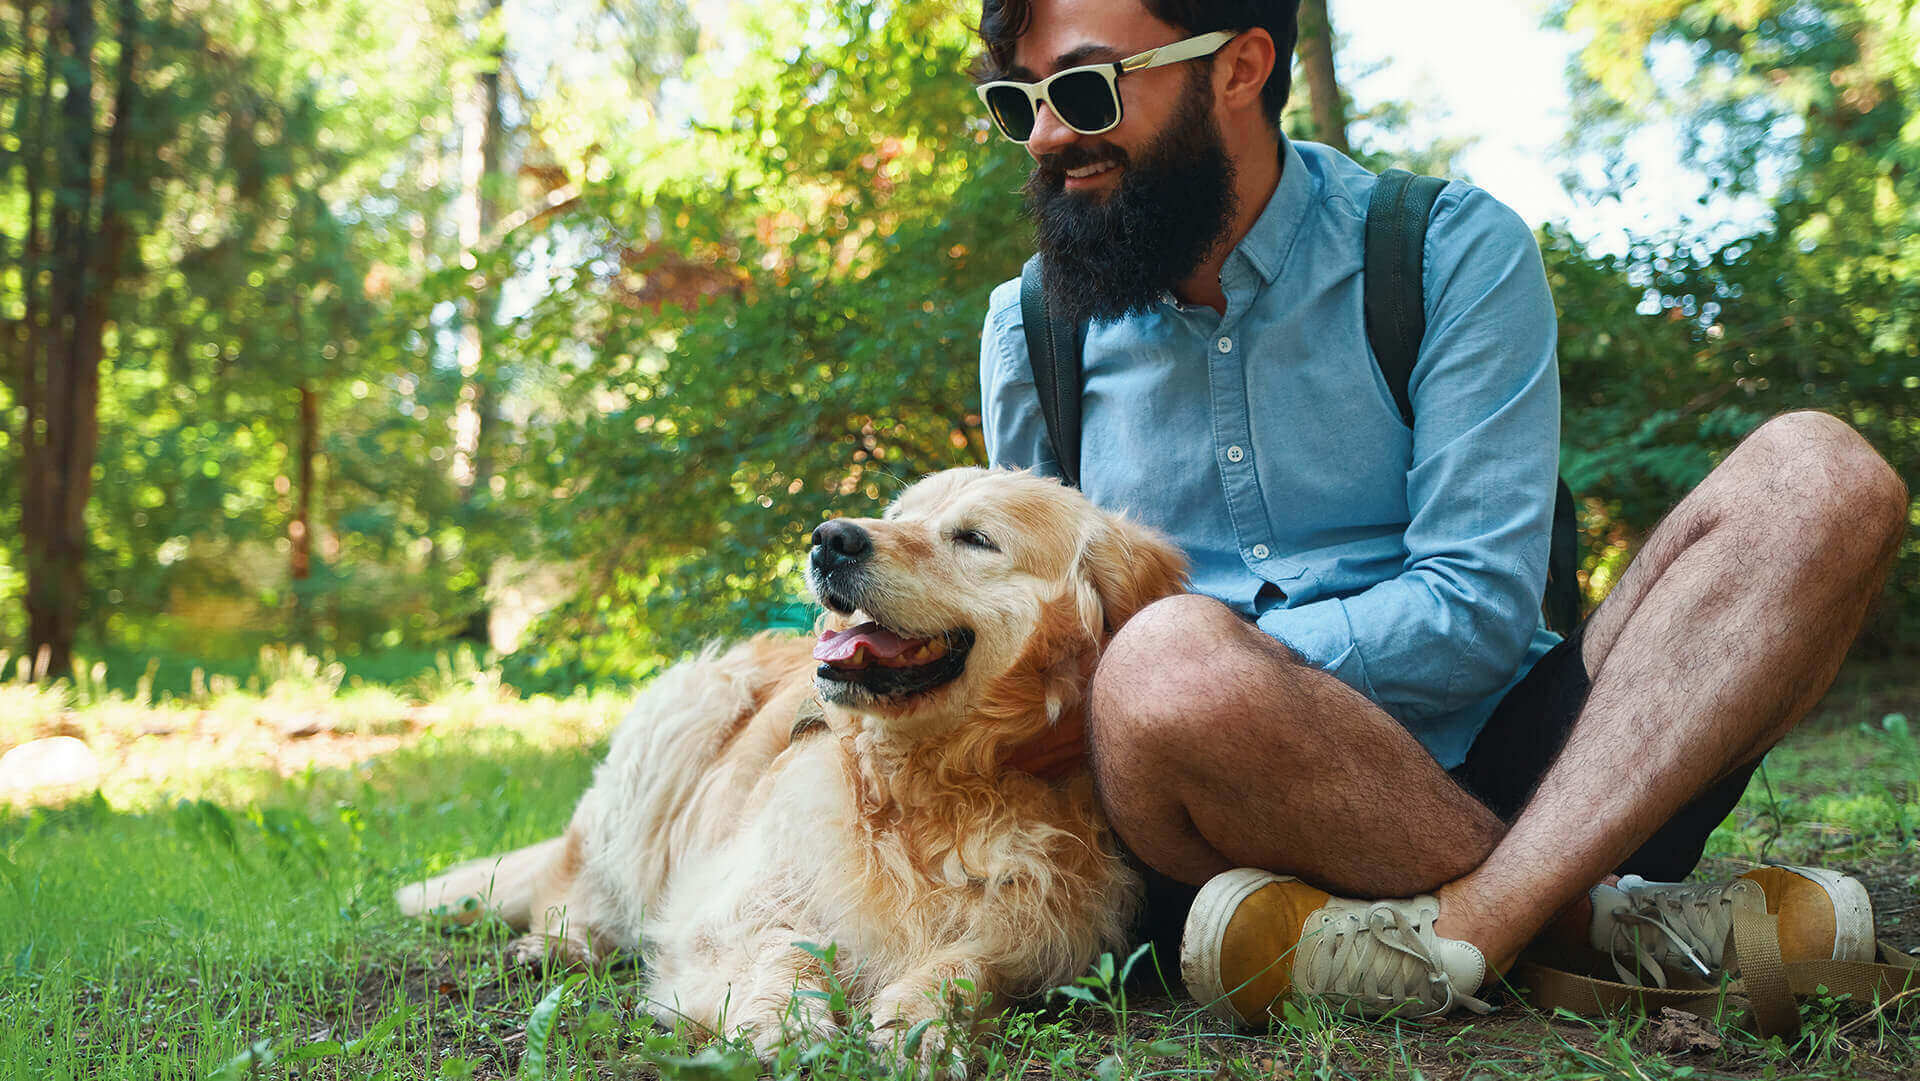 Beżowy pies leżący na zielonej trawie i siedzący, przytulony do niego mężczyzna w niebieskiej koszulce